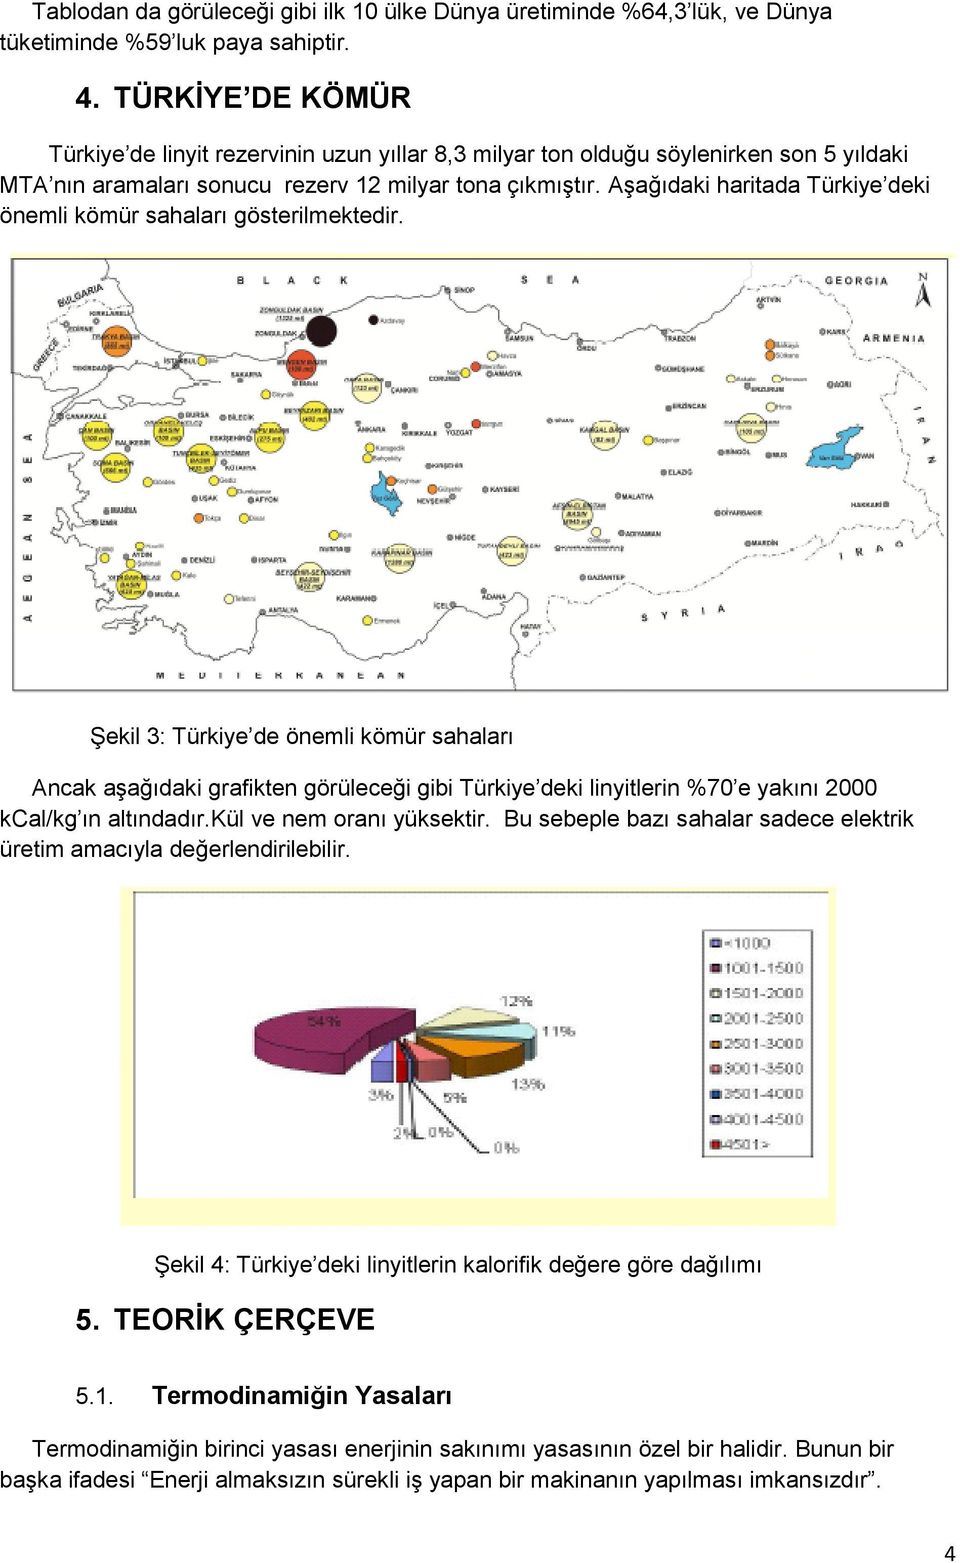 Aşağıdaki haritada Türkiye deki önemli kömür sahaları gösterilmektedir.